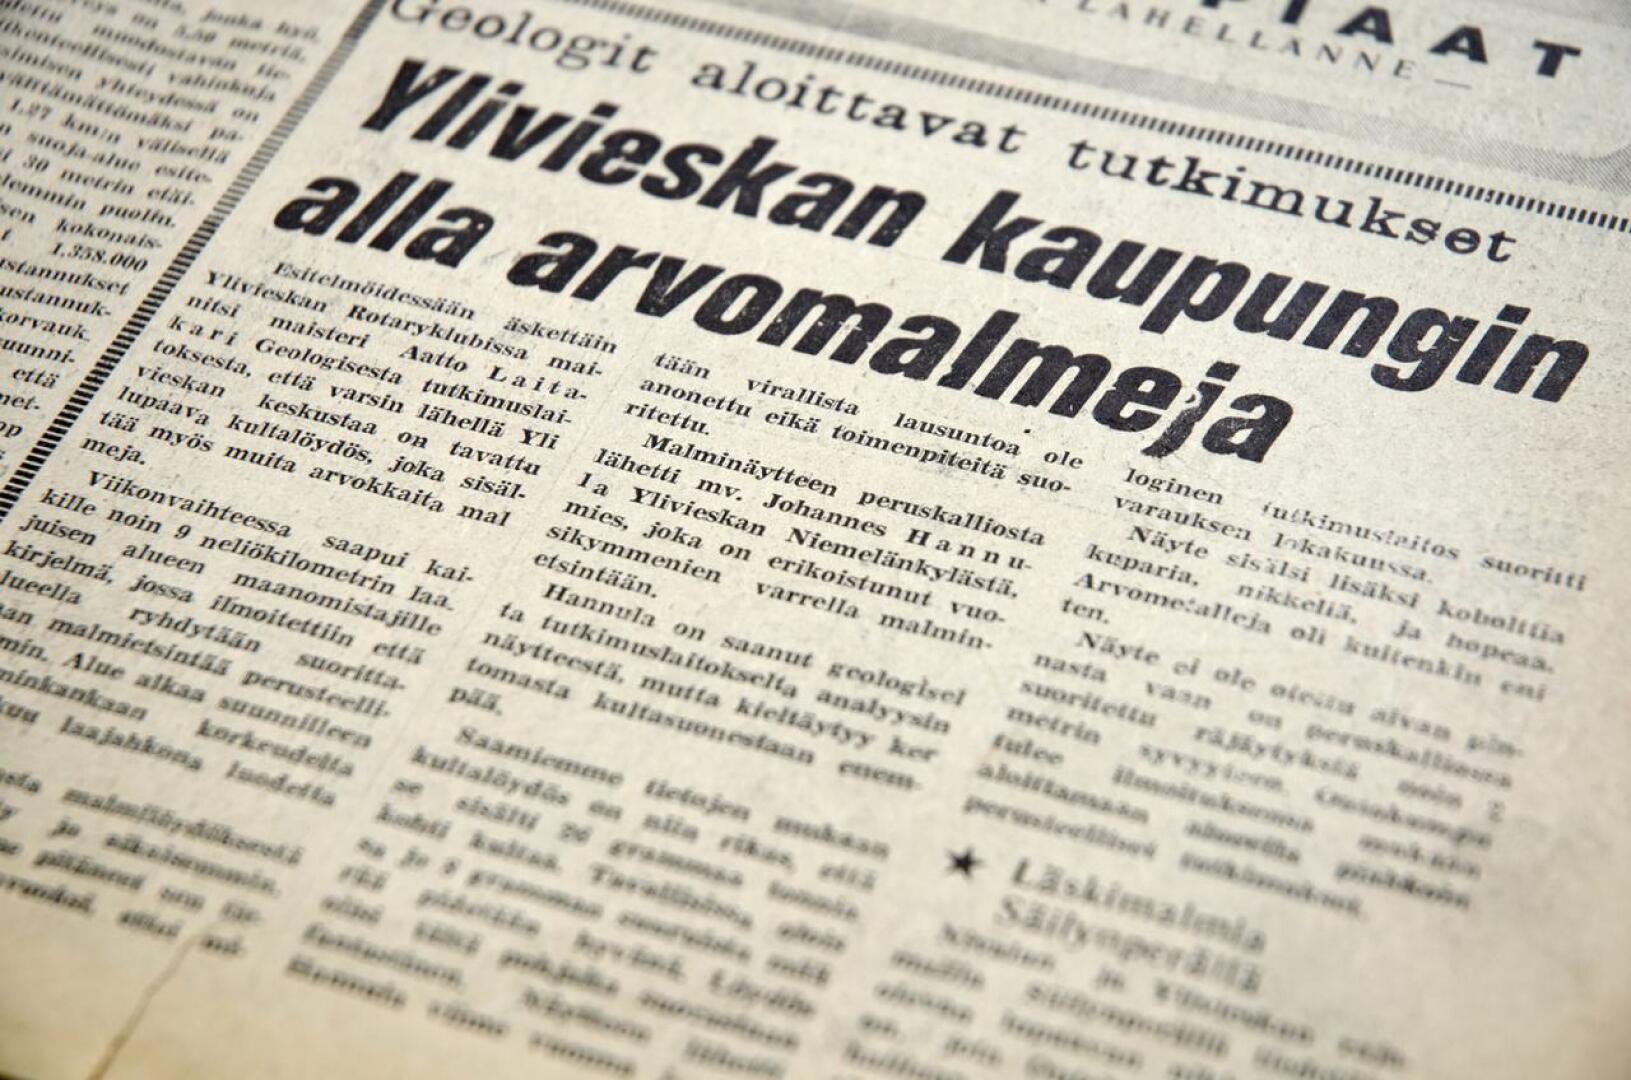 "Ylivieskan kaupungin alla arvometalleja", Kalajokilaakso otsikoi 50 vuotta sitten.